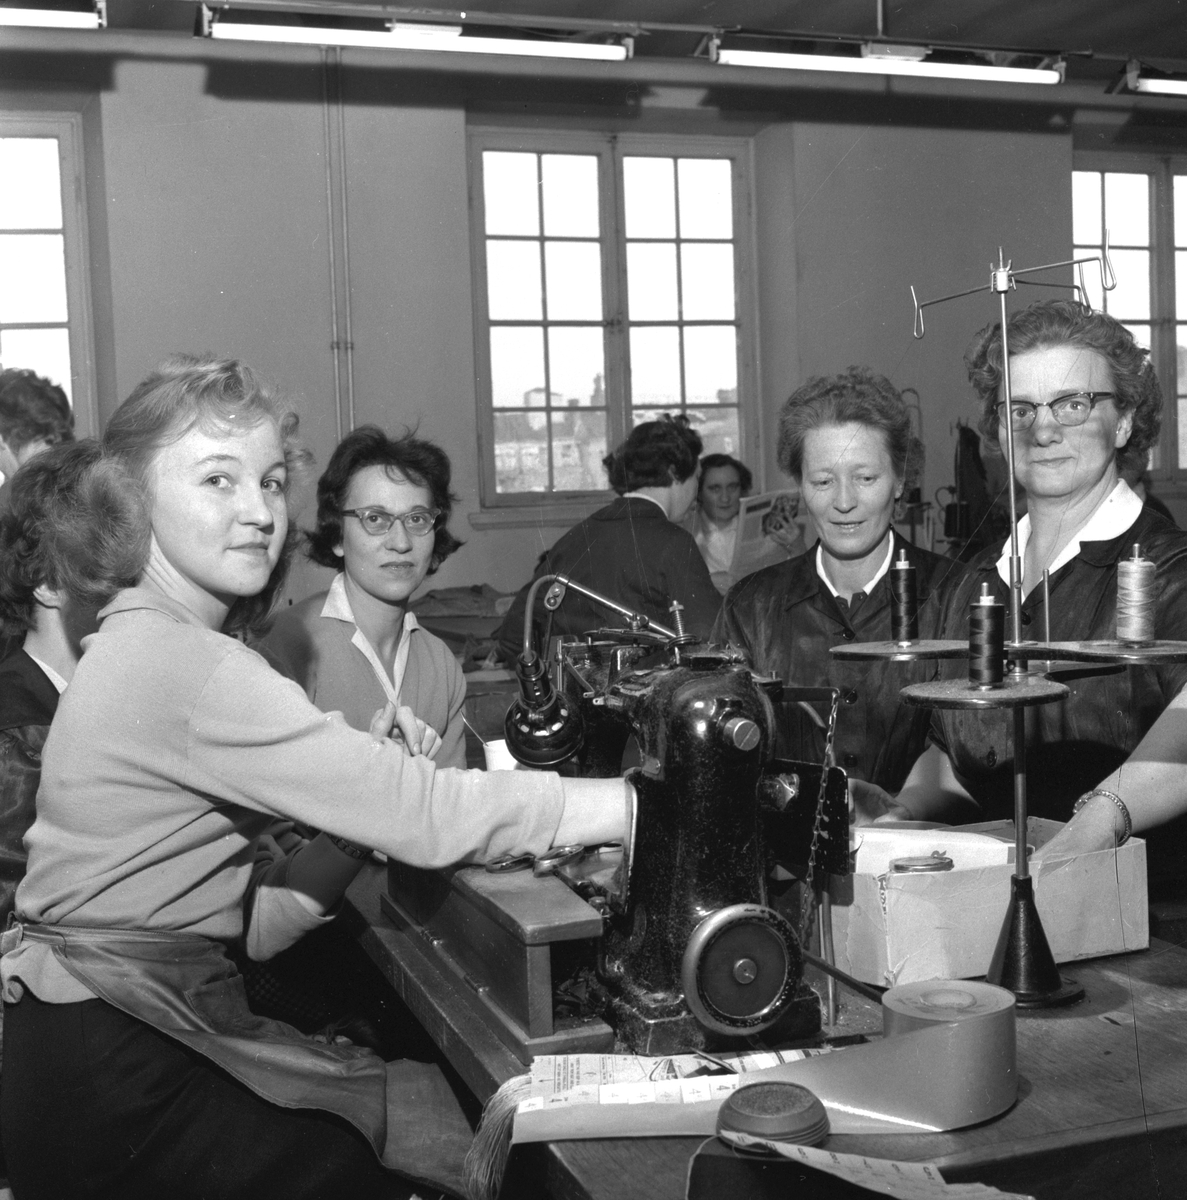 Skobranschen ser på yrkesskolan.
6 februari 1959.